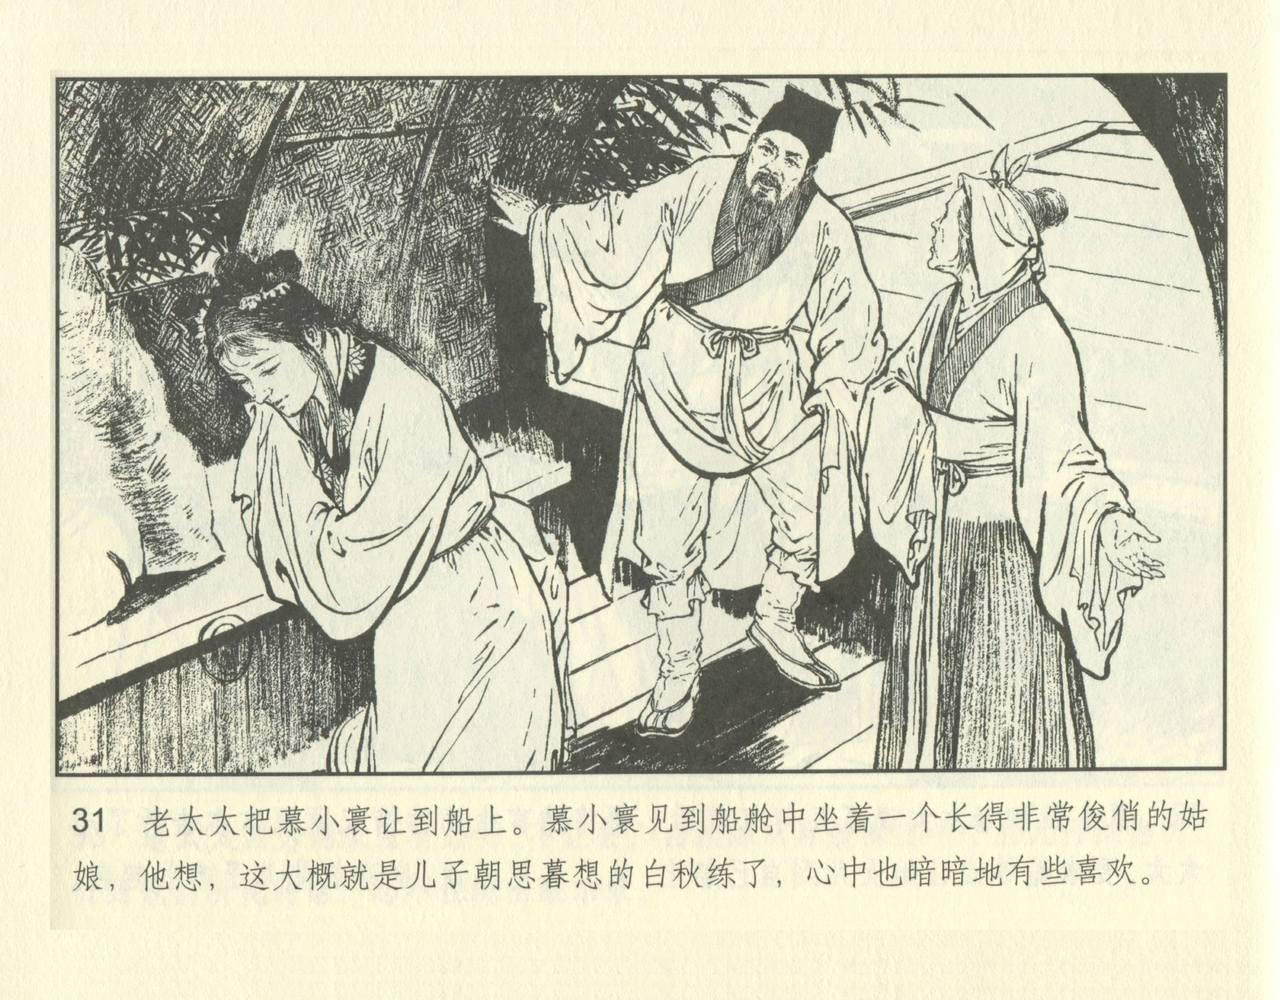 聊斋志异 张玮等绘 天津人民美术出版社 卷二十一 ~ 三十 80